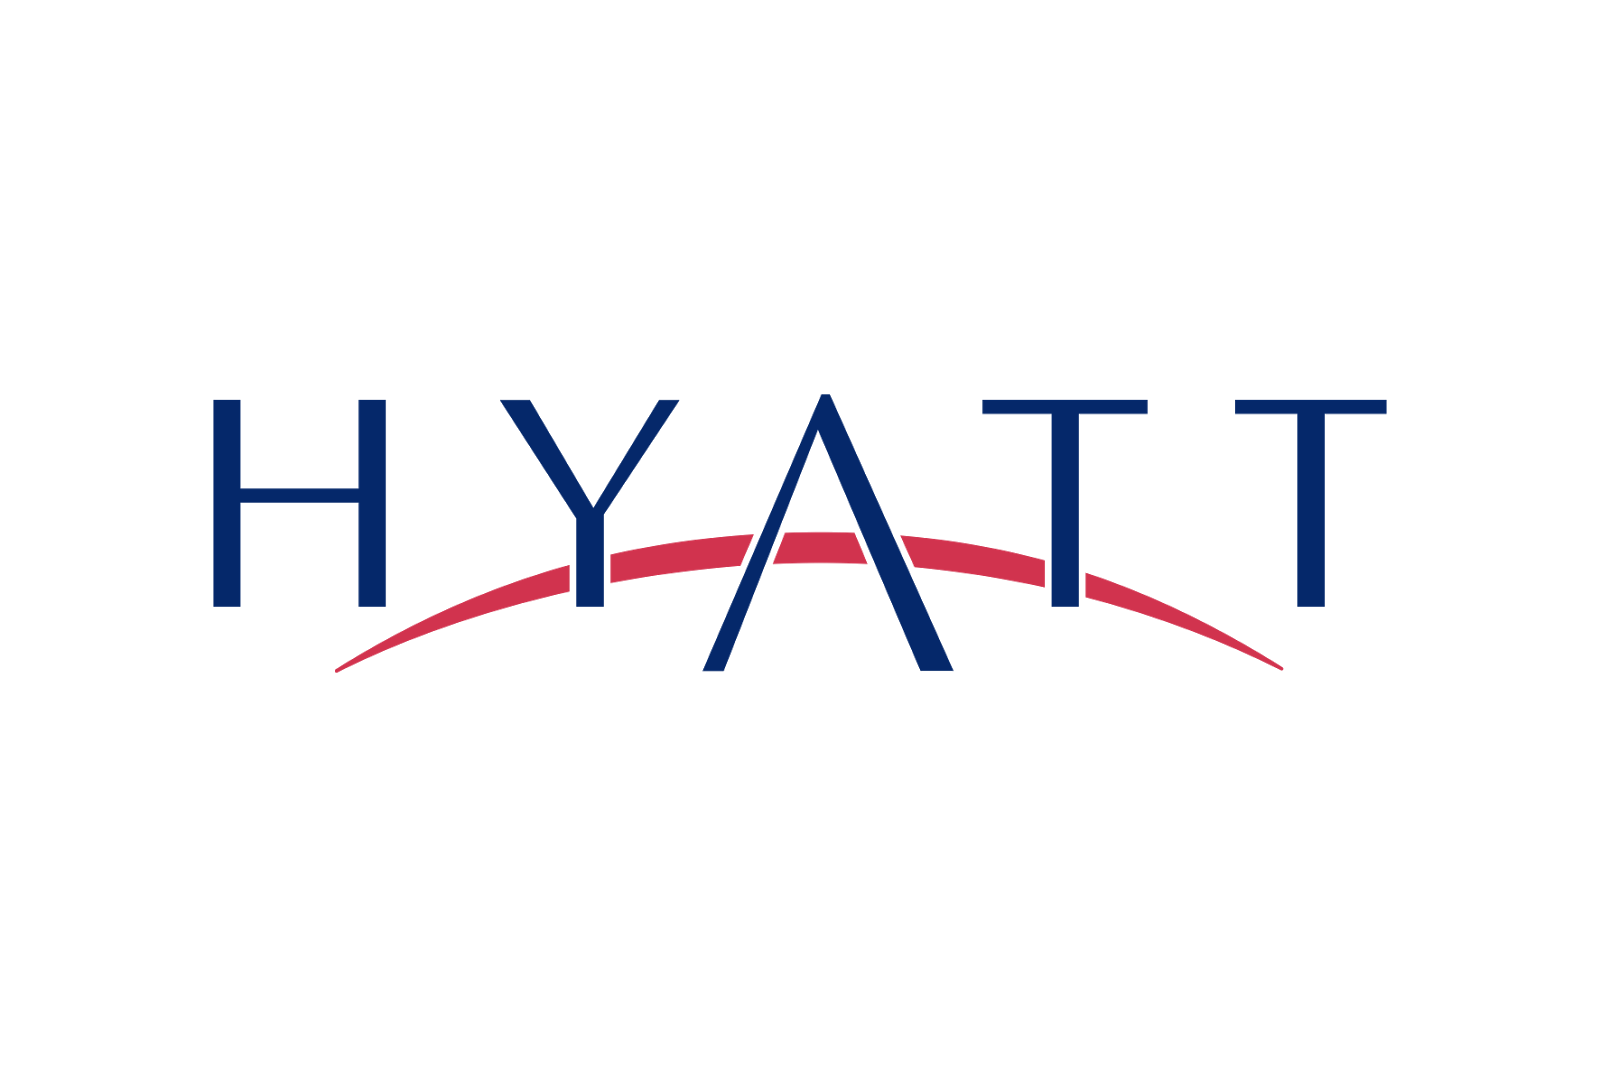 Hotel hyatt logo png #41807